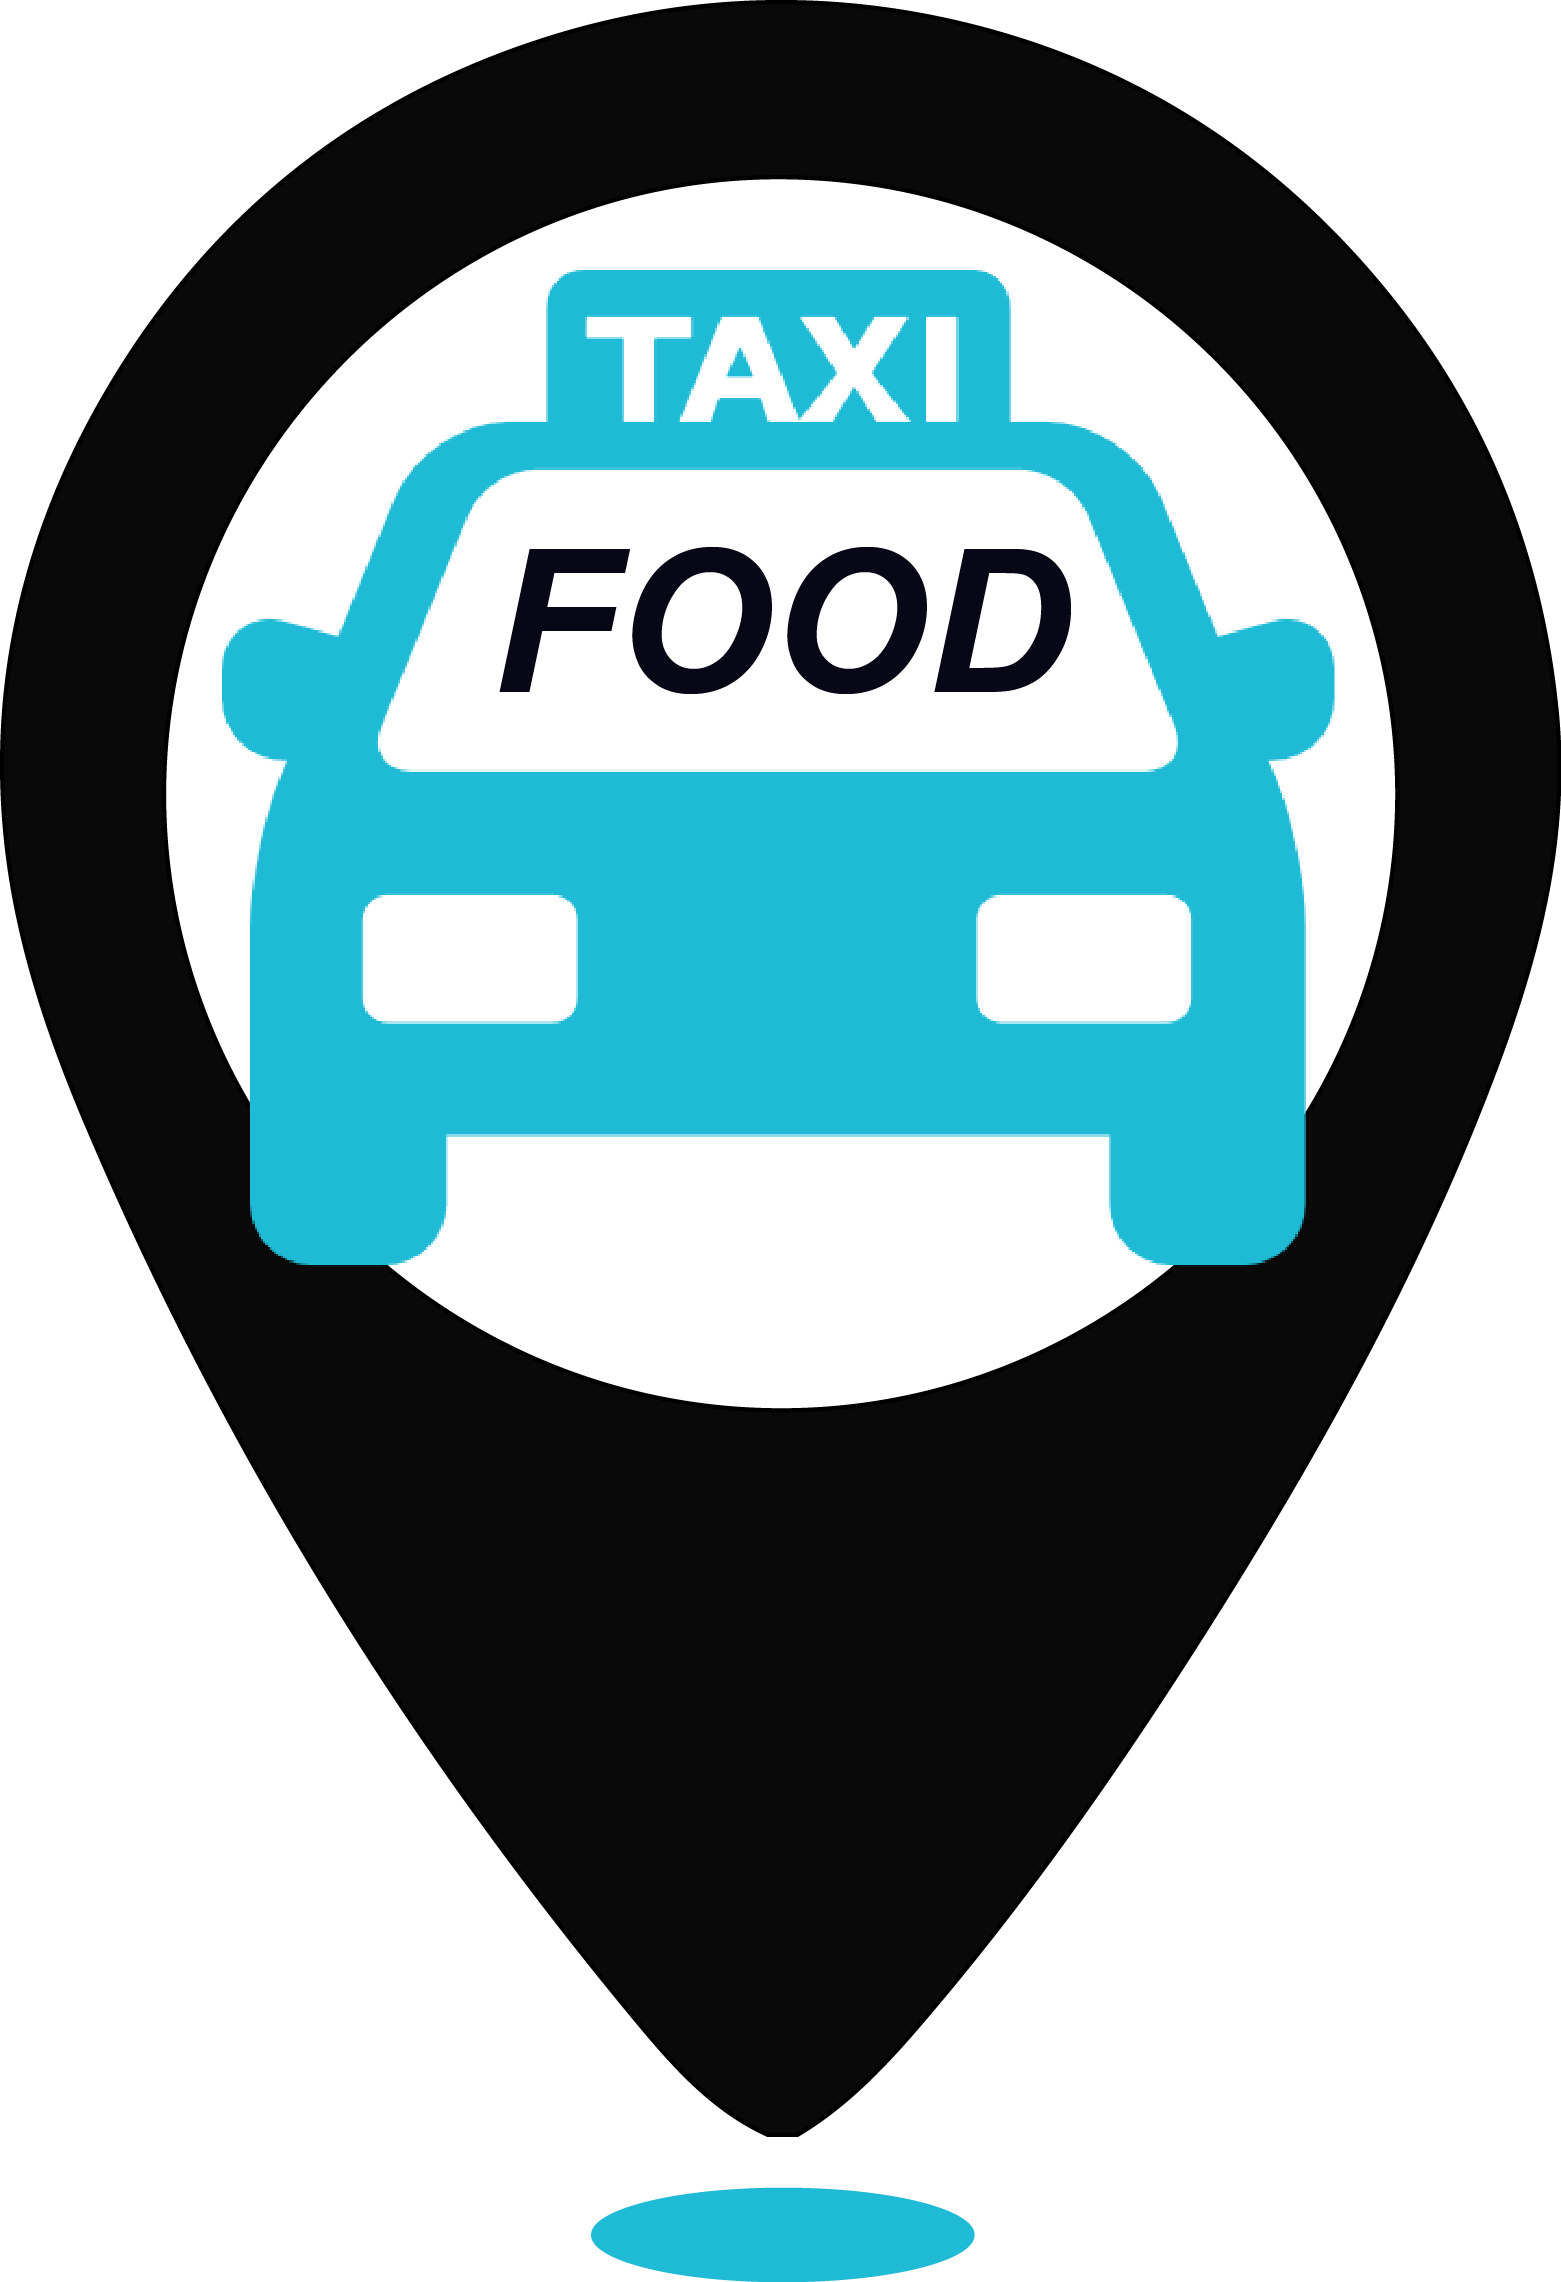 Логотип такси. Фуд такси. Taxi food логотип. Такси еда СПБ.